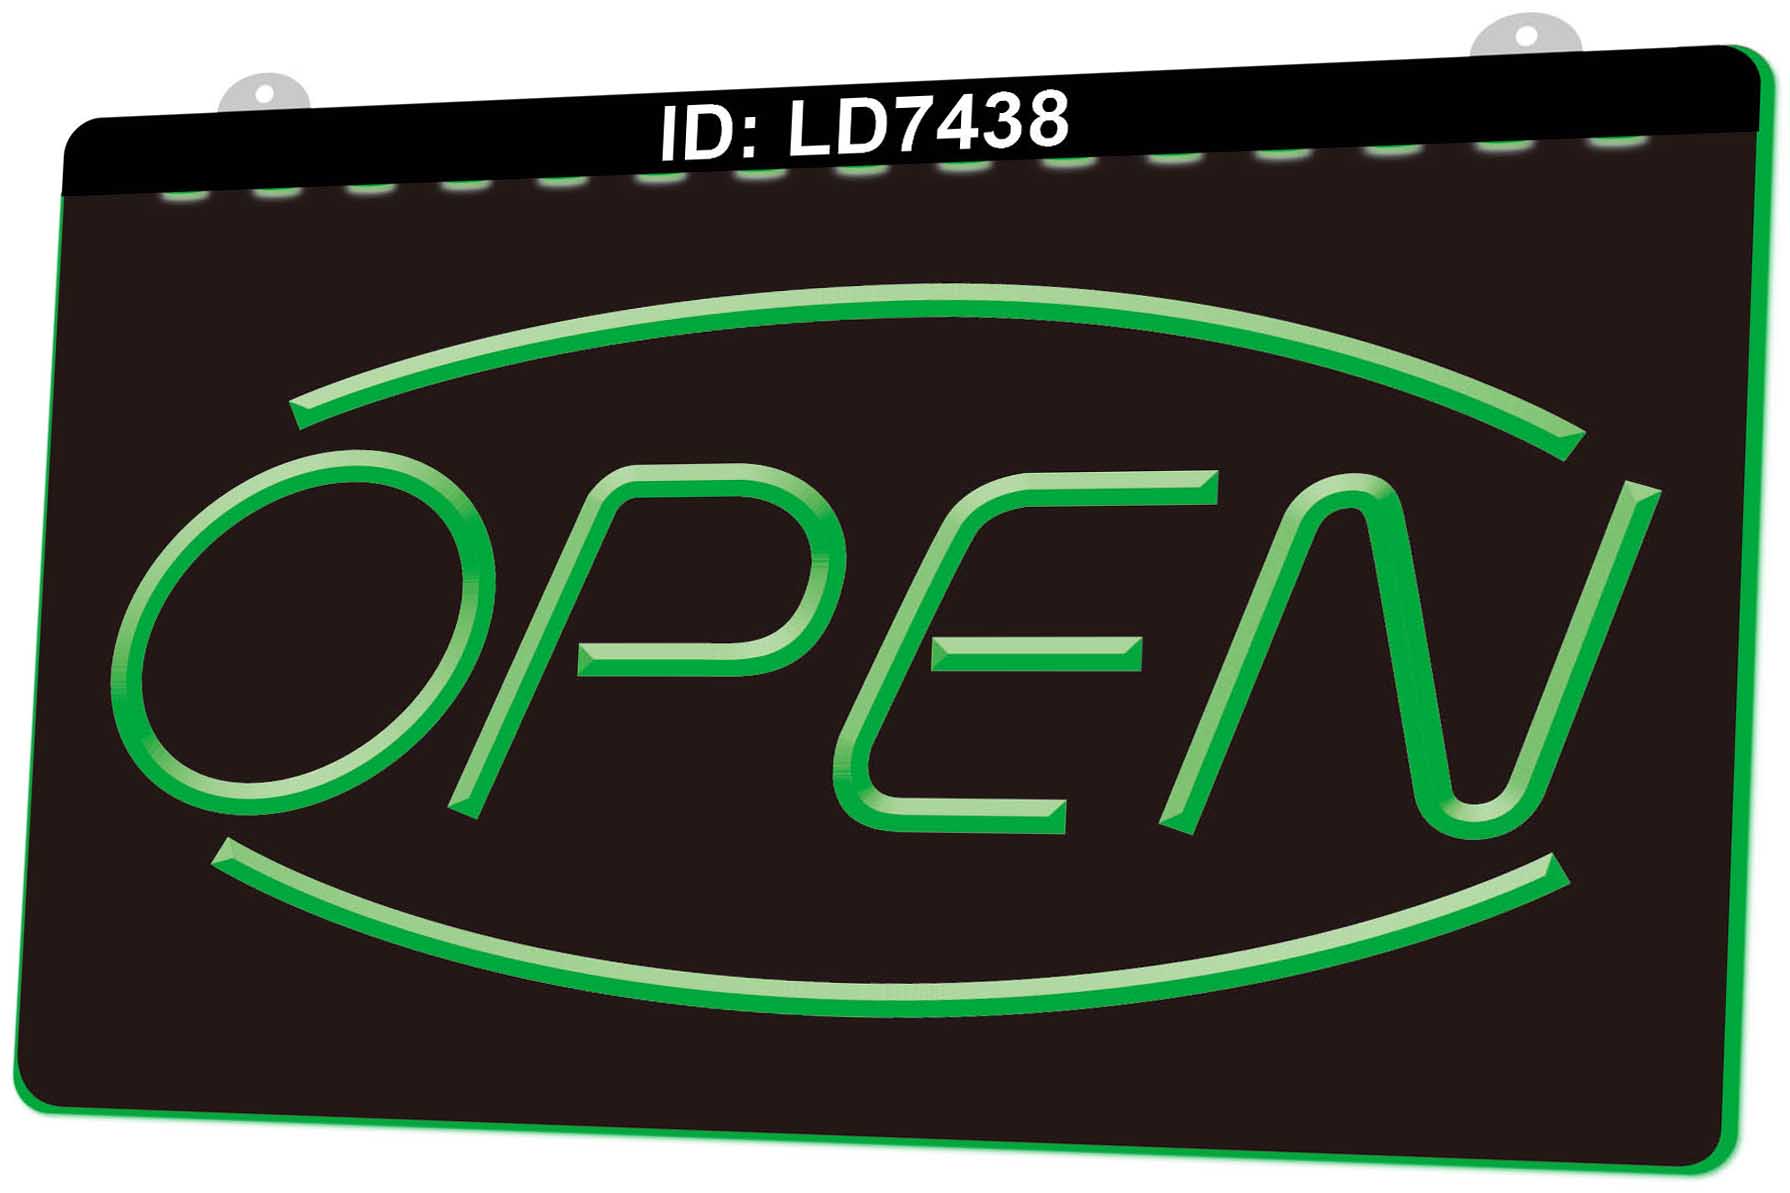 

LD7438 Open Shop Bar Pub Club 3D Engraving LED Light Sign Wholesale Retail